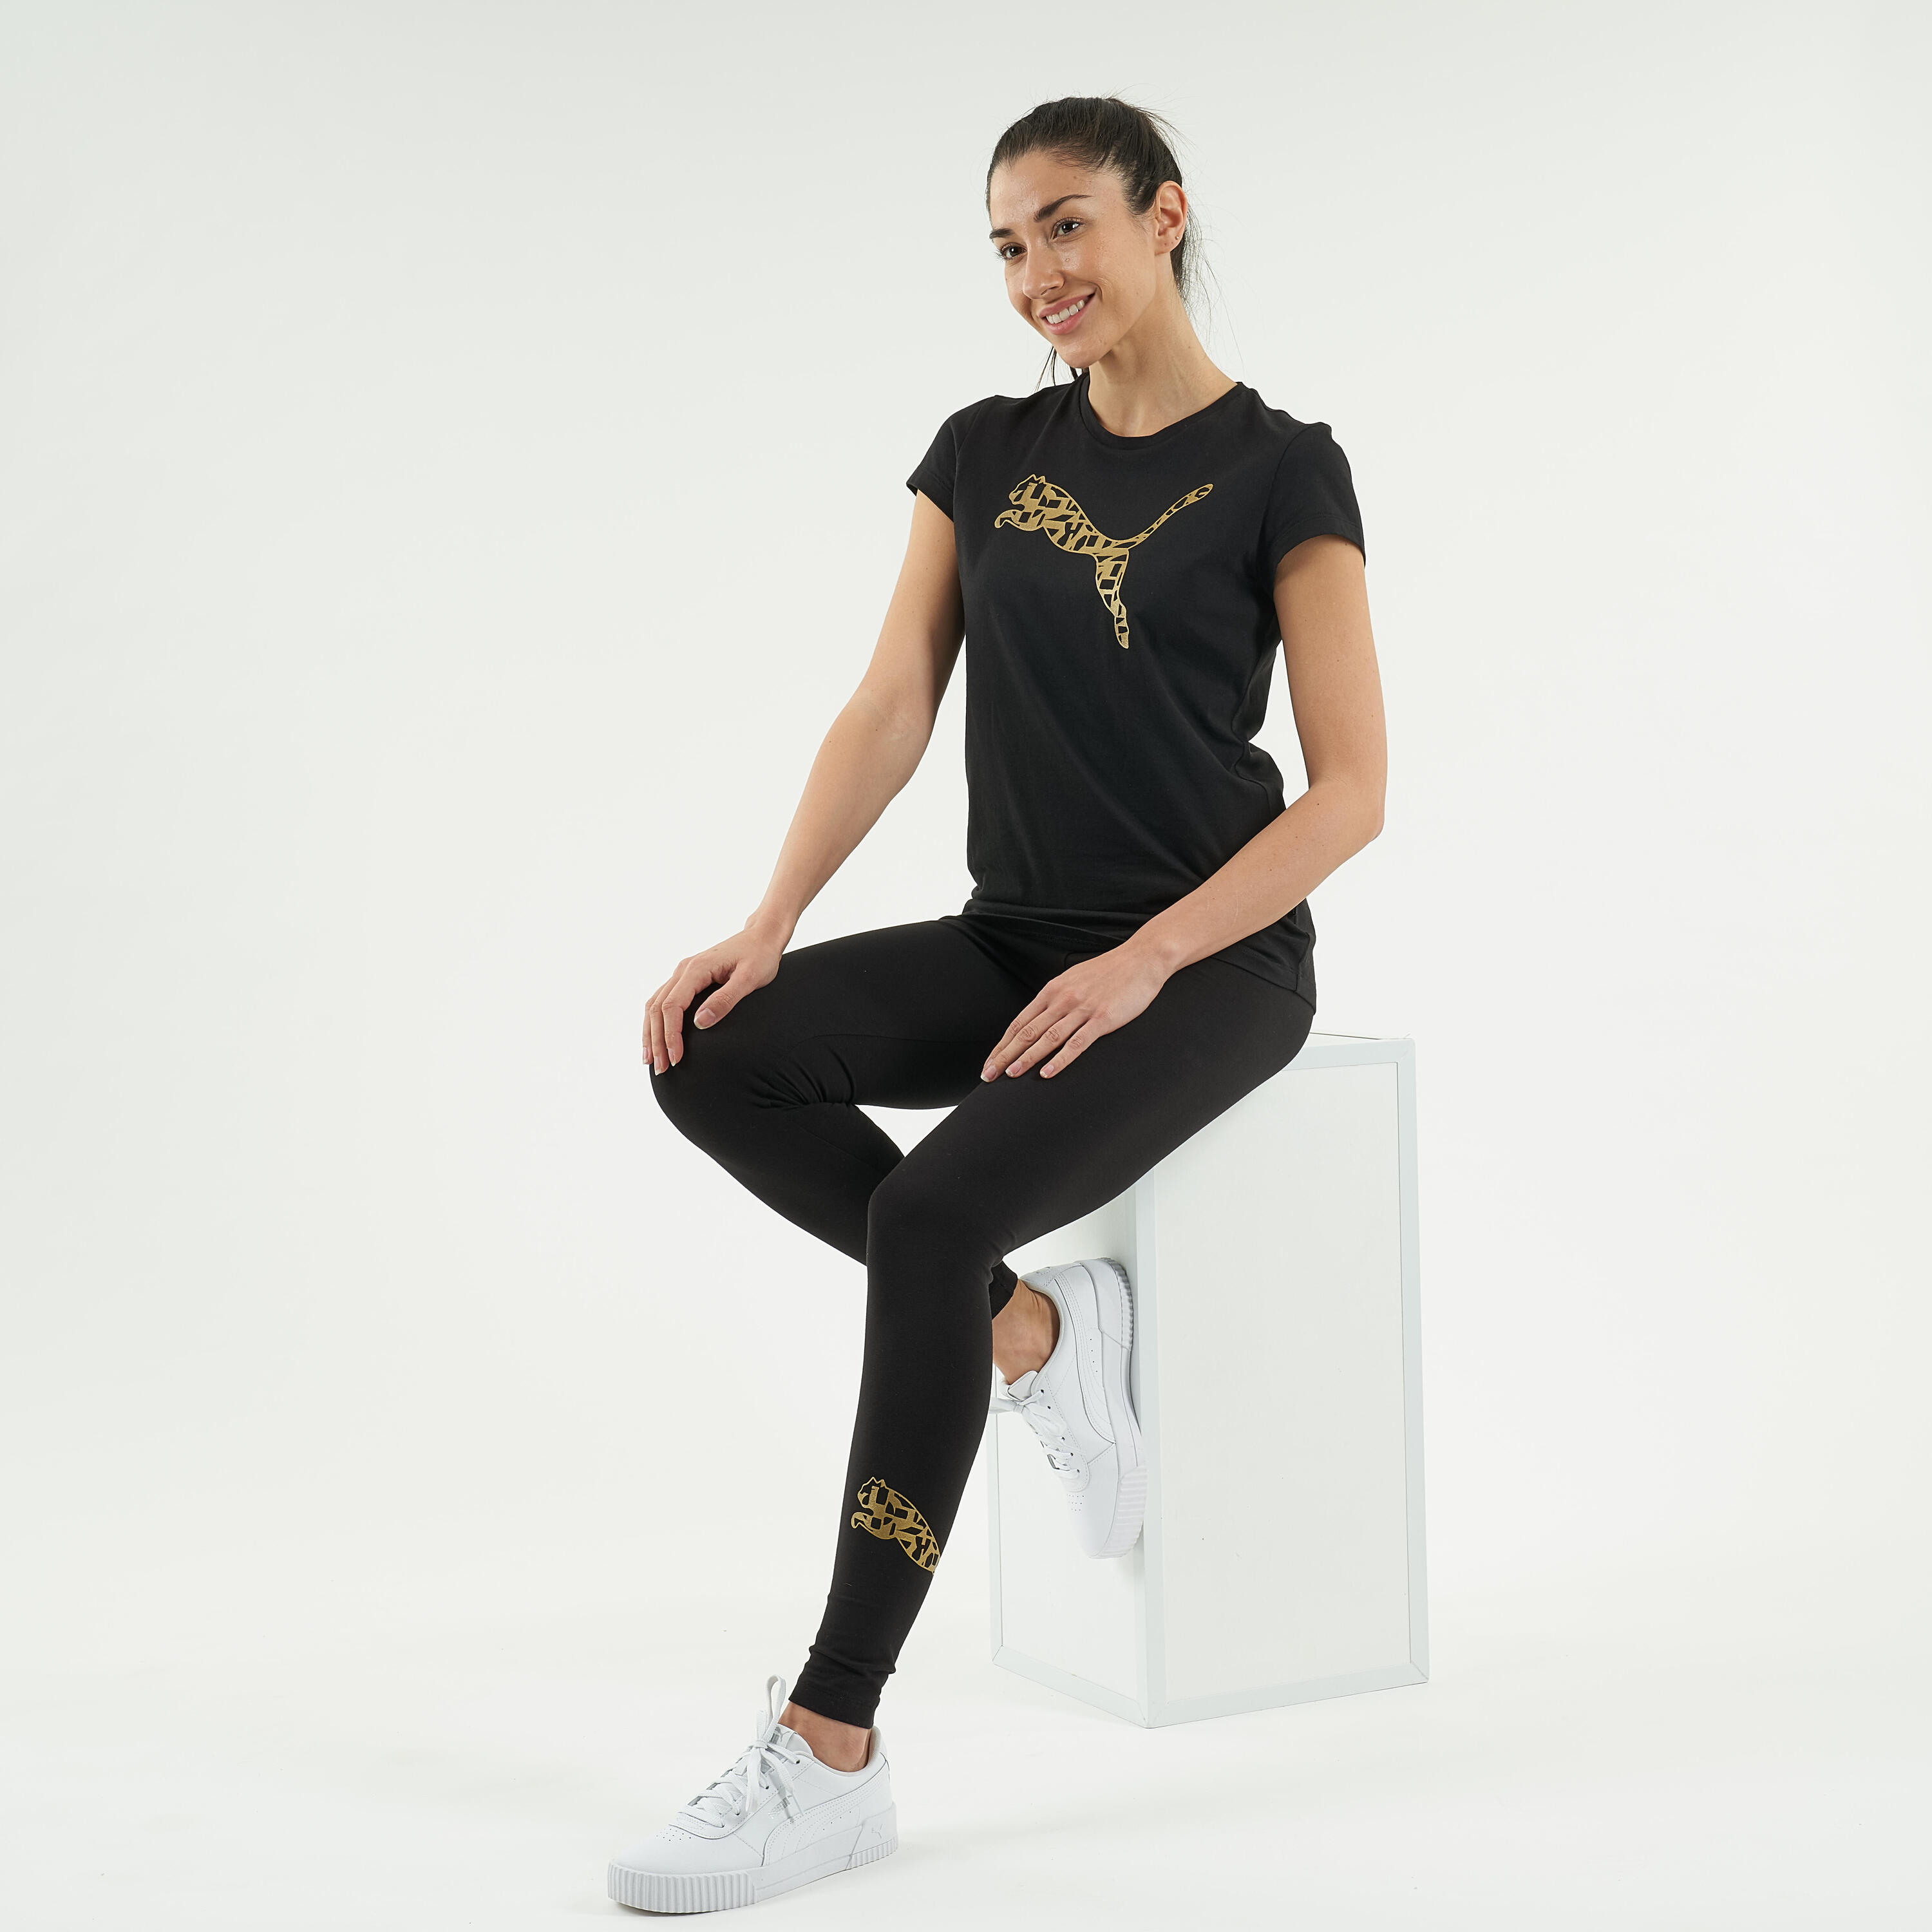 Cotton Fitness Leggings - Black/Gold Logo 2/7